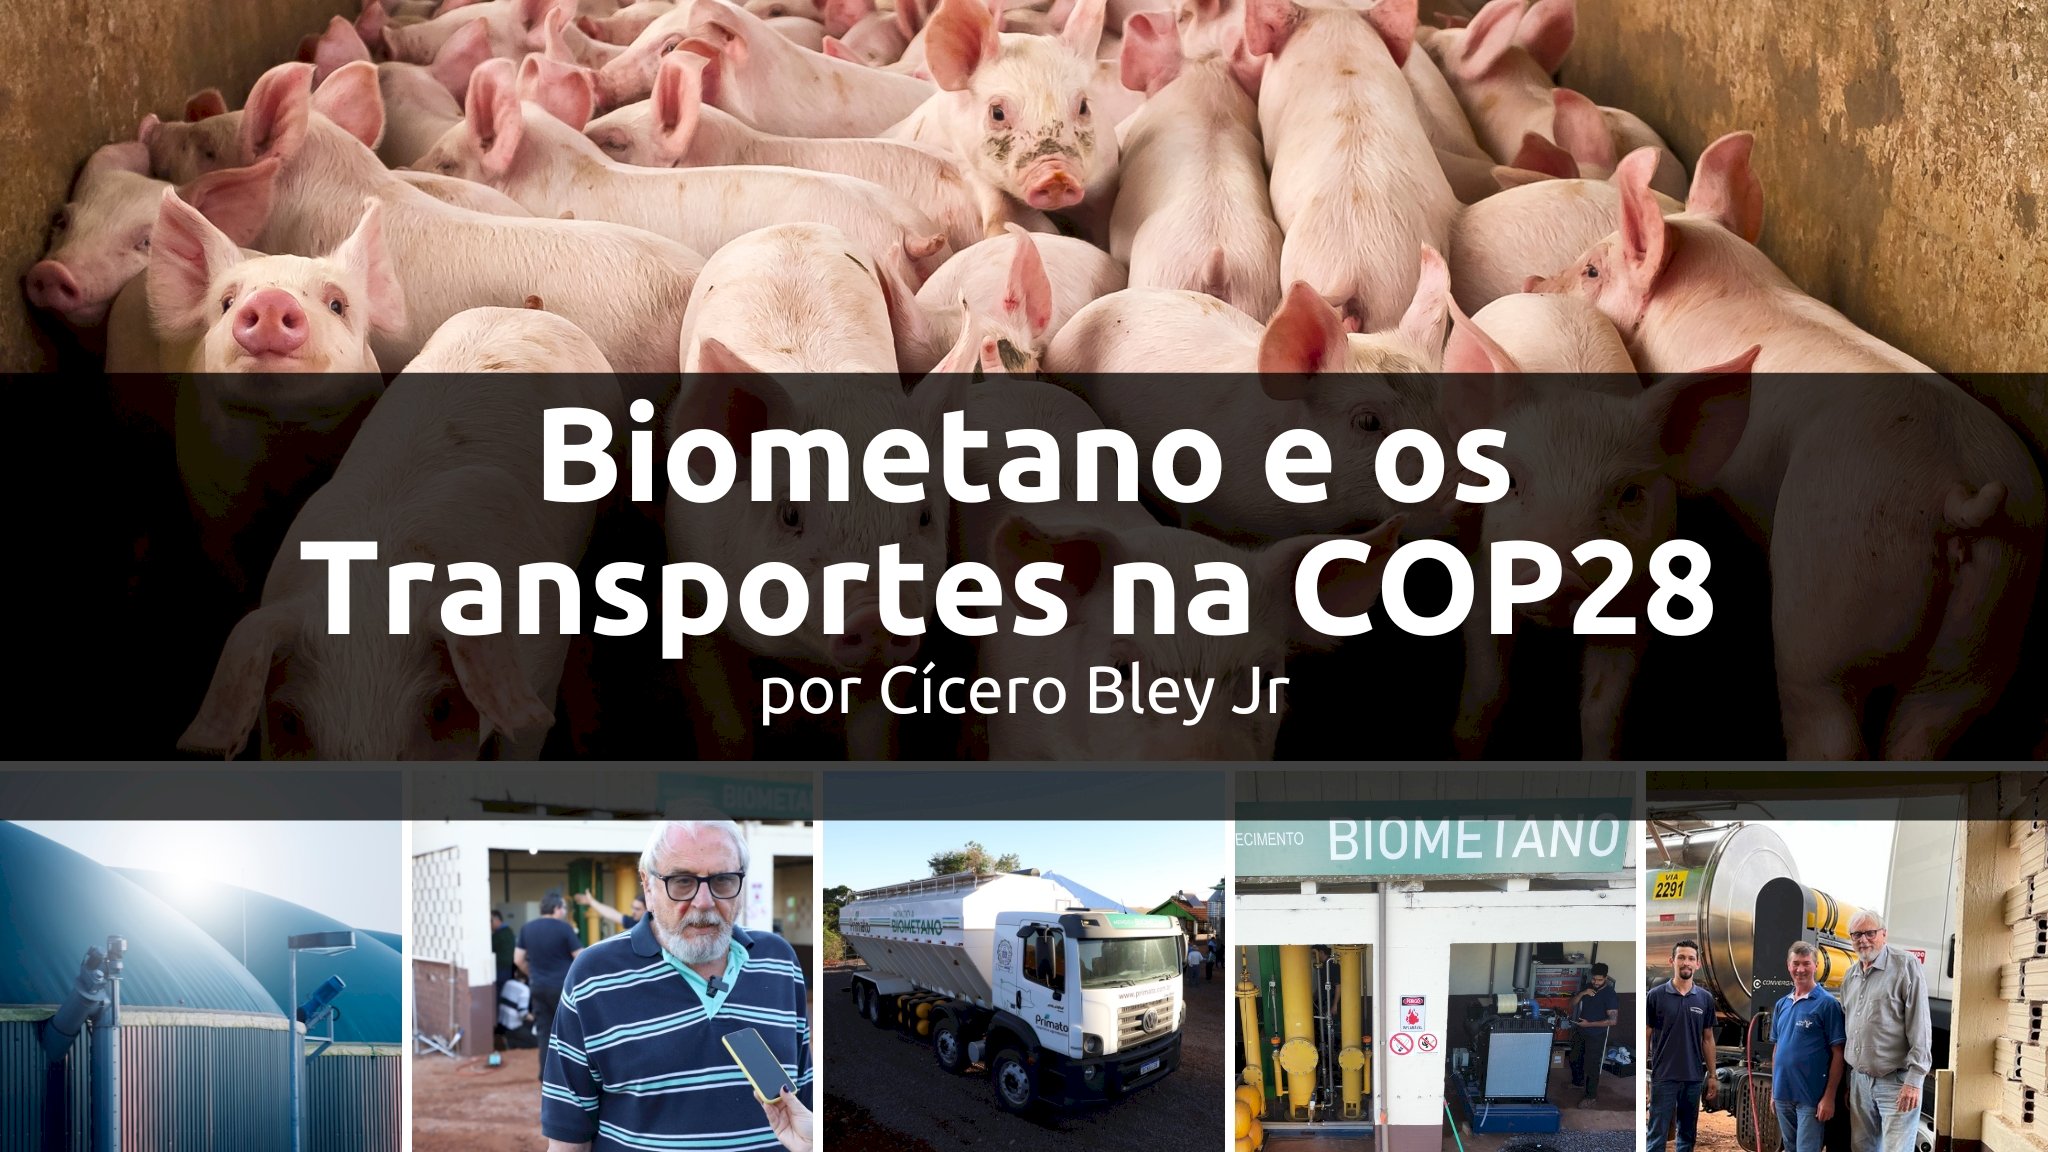 Biometano e os Transportes na COP28 